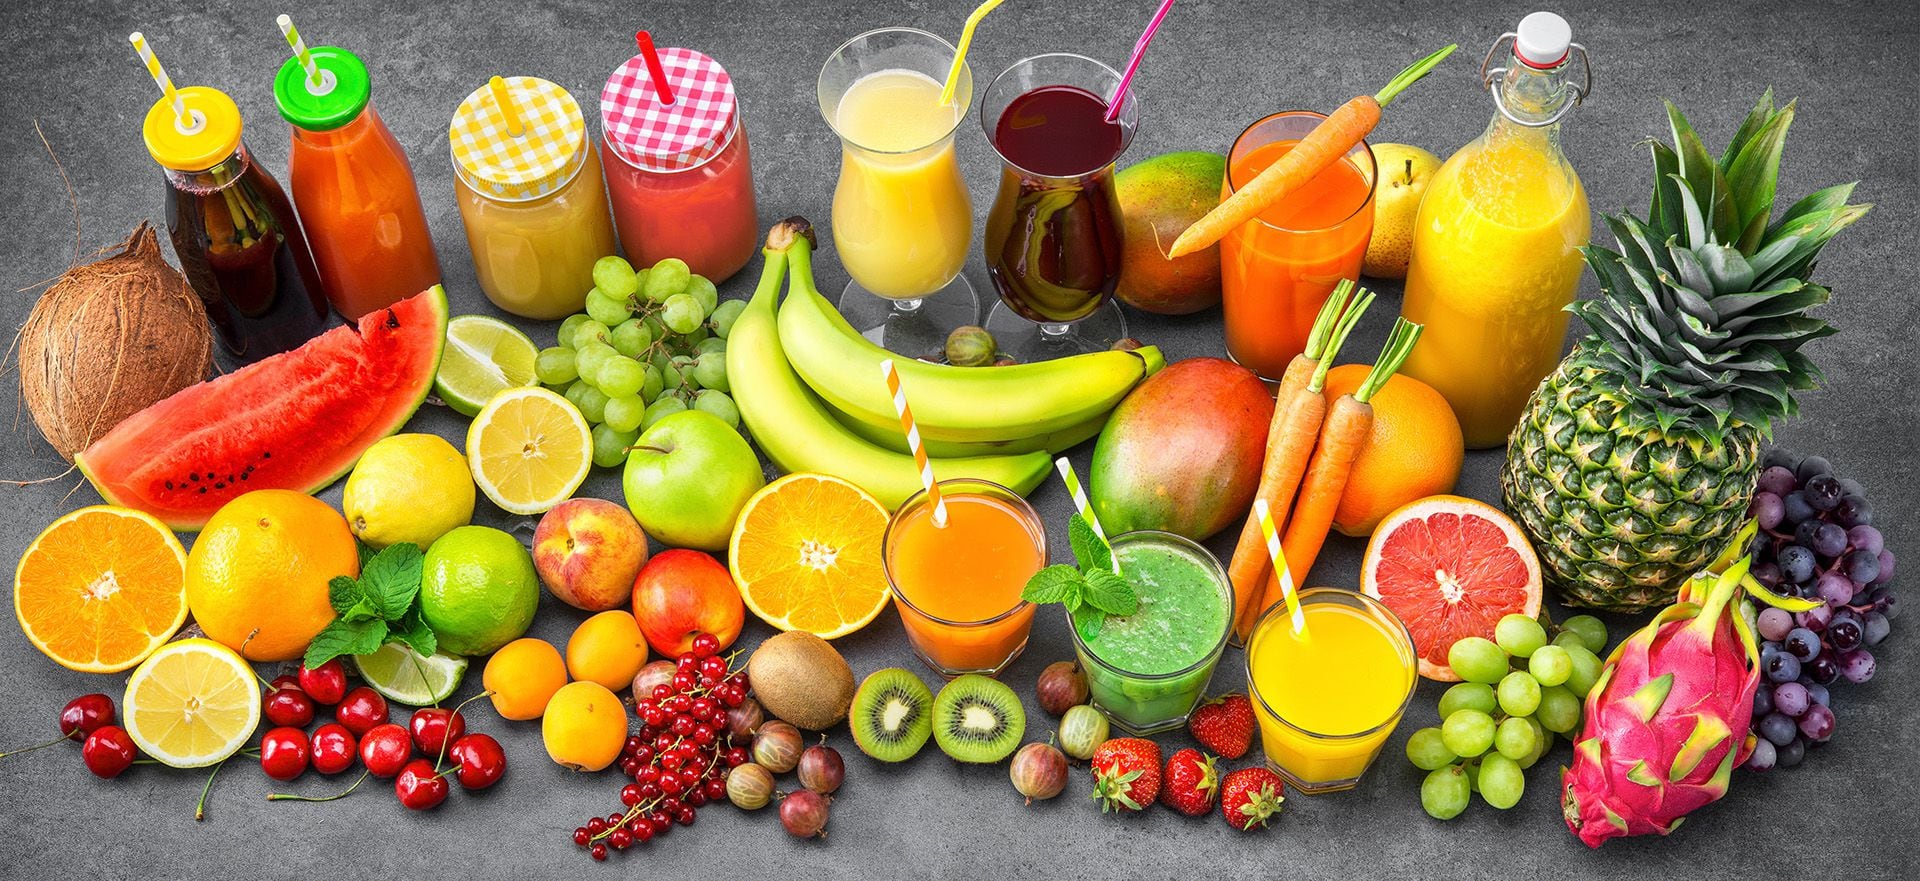 El doctor Carlos Jaramillo asegura que se pueden tratar diferentes enfermedades mejorando los hábitos alimenticios (Shutterstock)